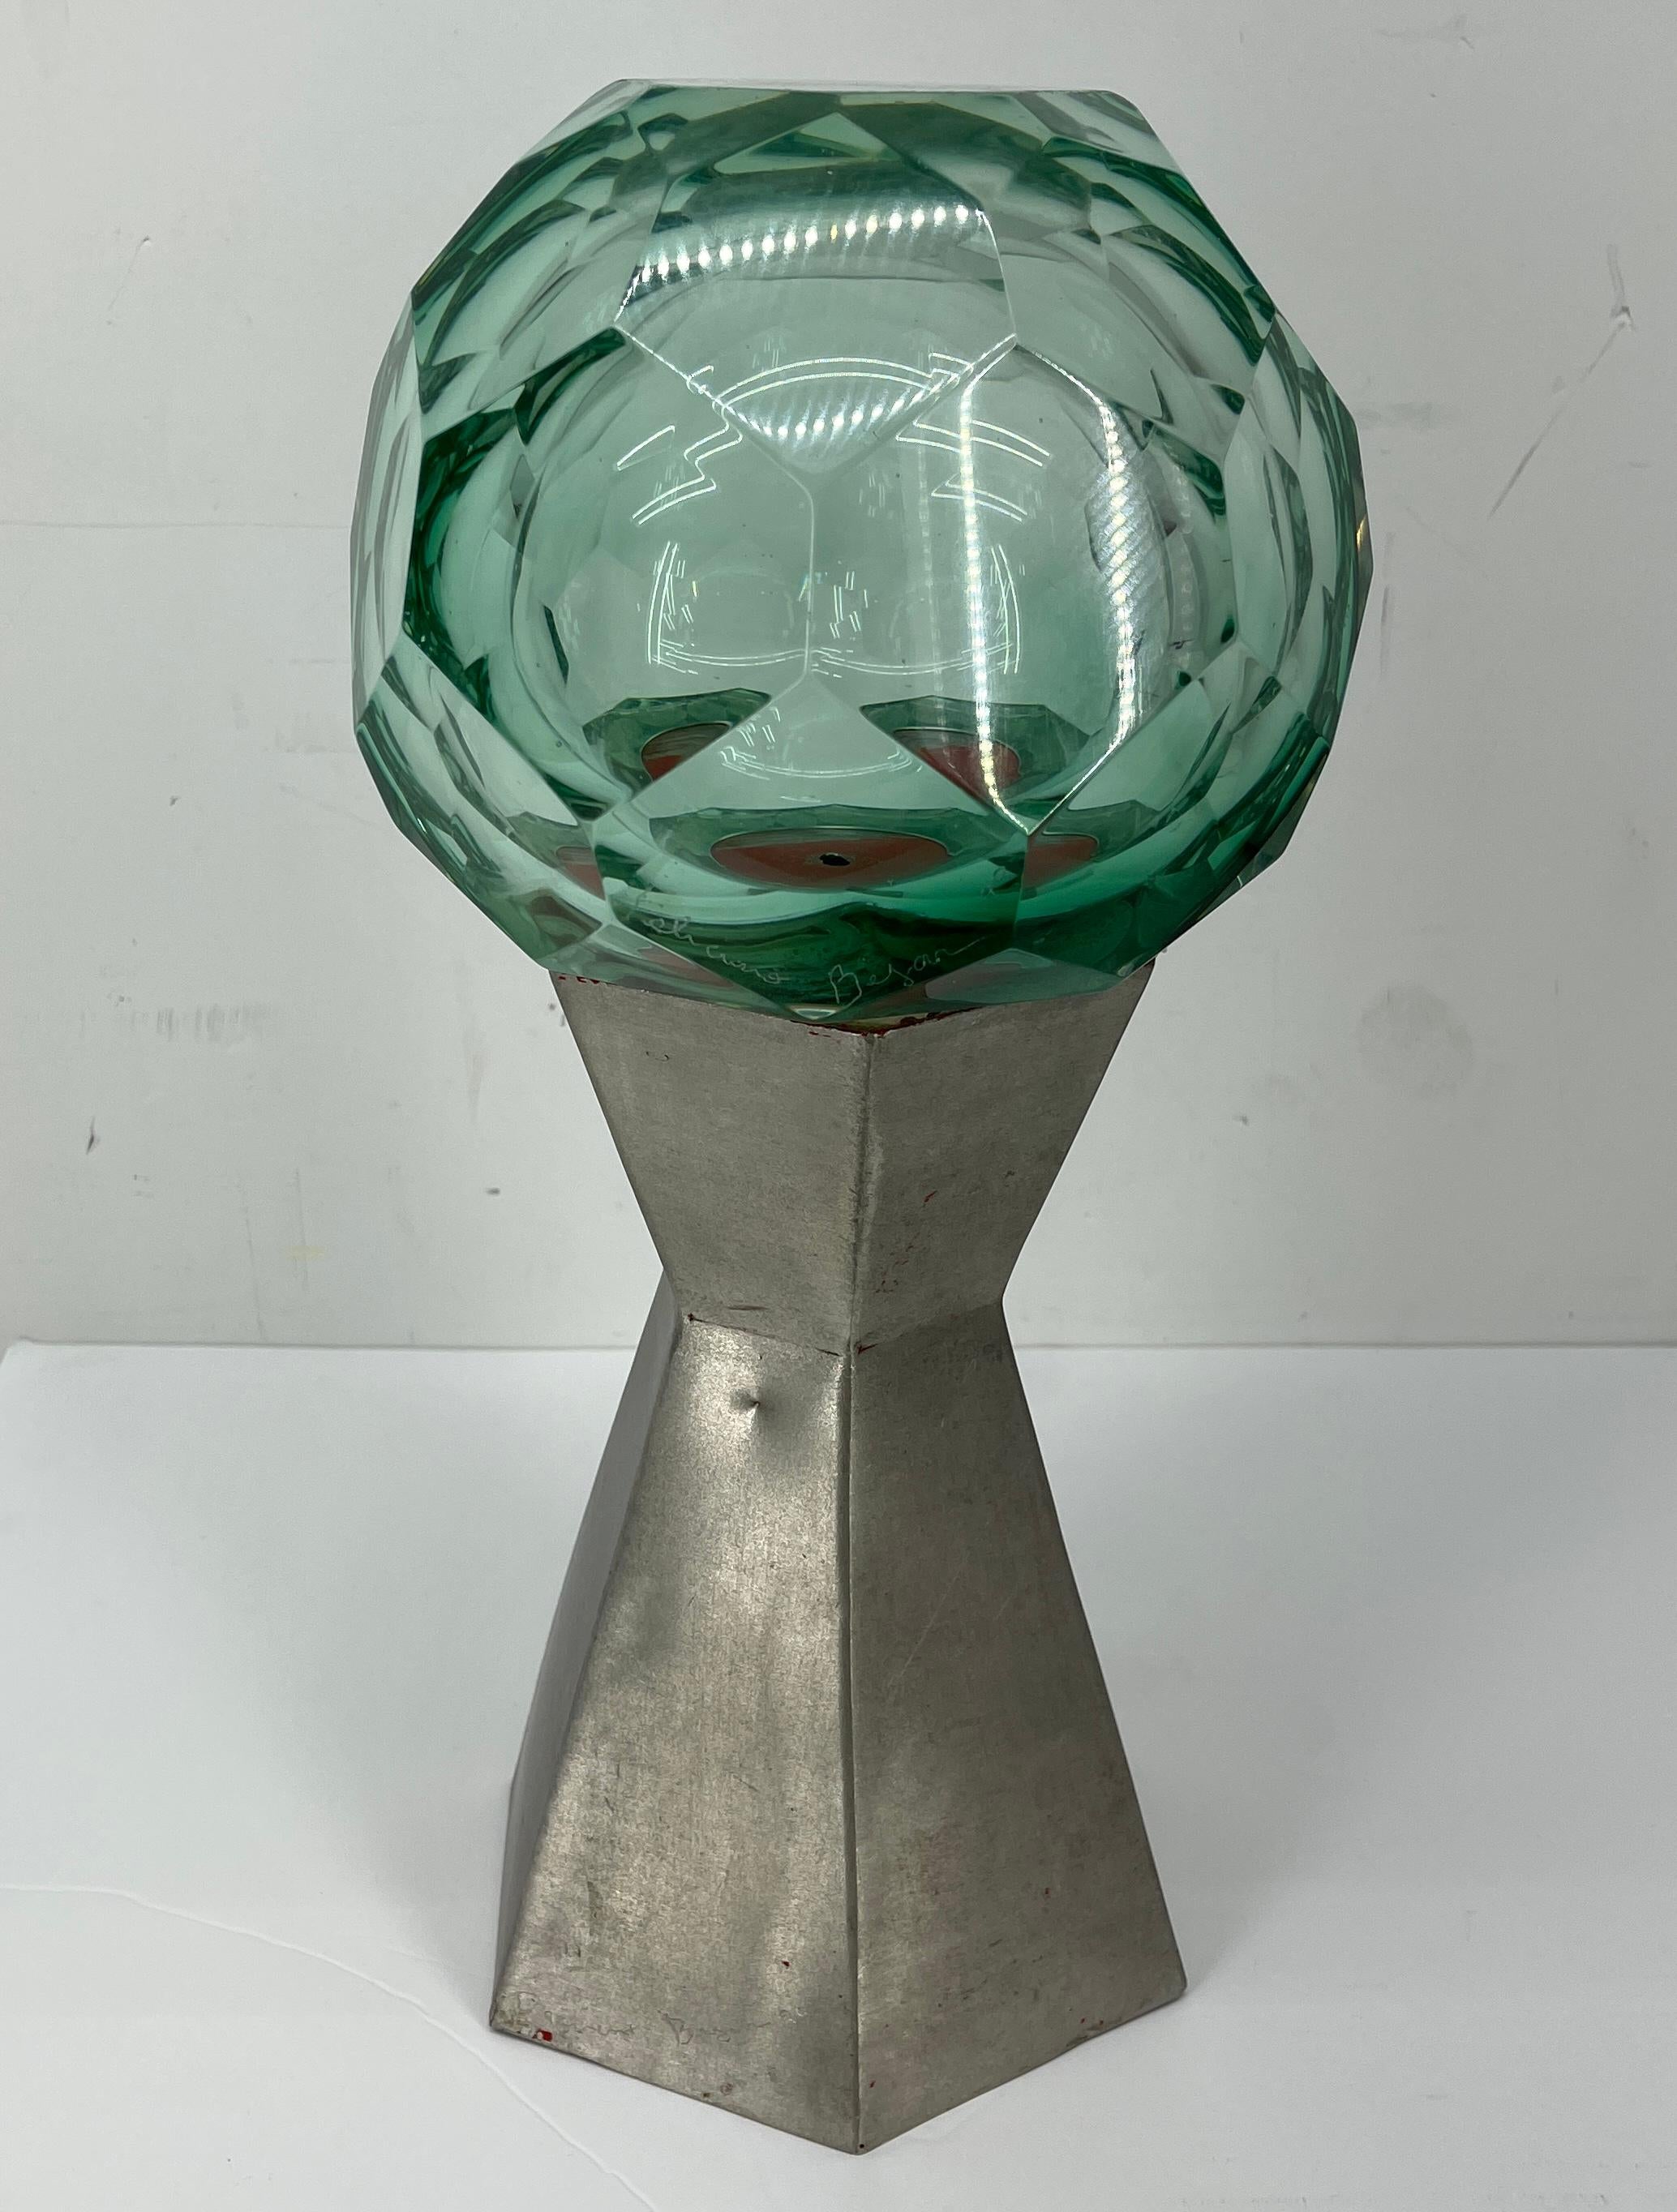 Sculpture de table en verre taillé et aluminium brossé de Feliciano Bjar (1920-2007), Mexique, années 1990. 
Ses sculptures d'art datant des années 1960 à 1990 utilisent un fond de verre avec des bulles optiques ou une surface biseautée des deux